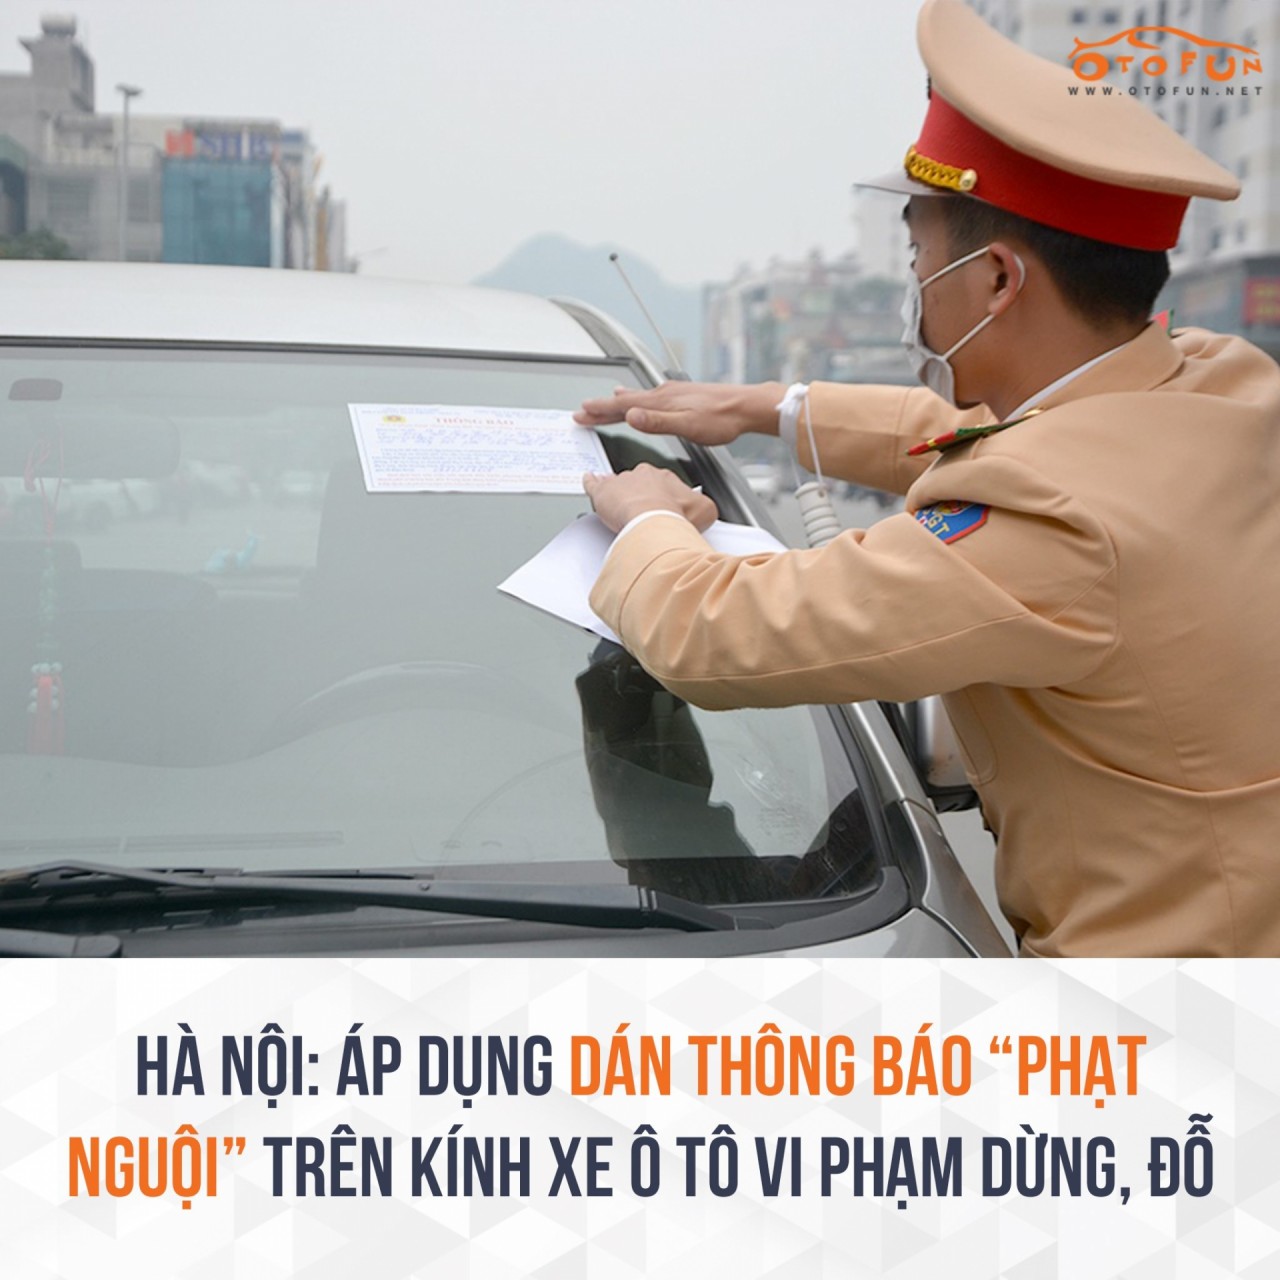 Hà Nội sẽ dán thông báo "phạt nguội" trên kính xe ô tô vi phạm dừng, đỗ